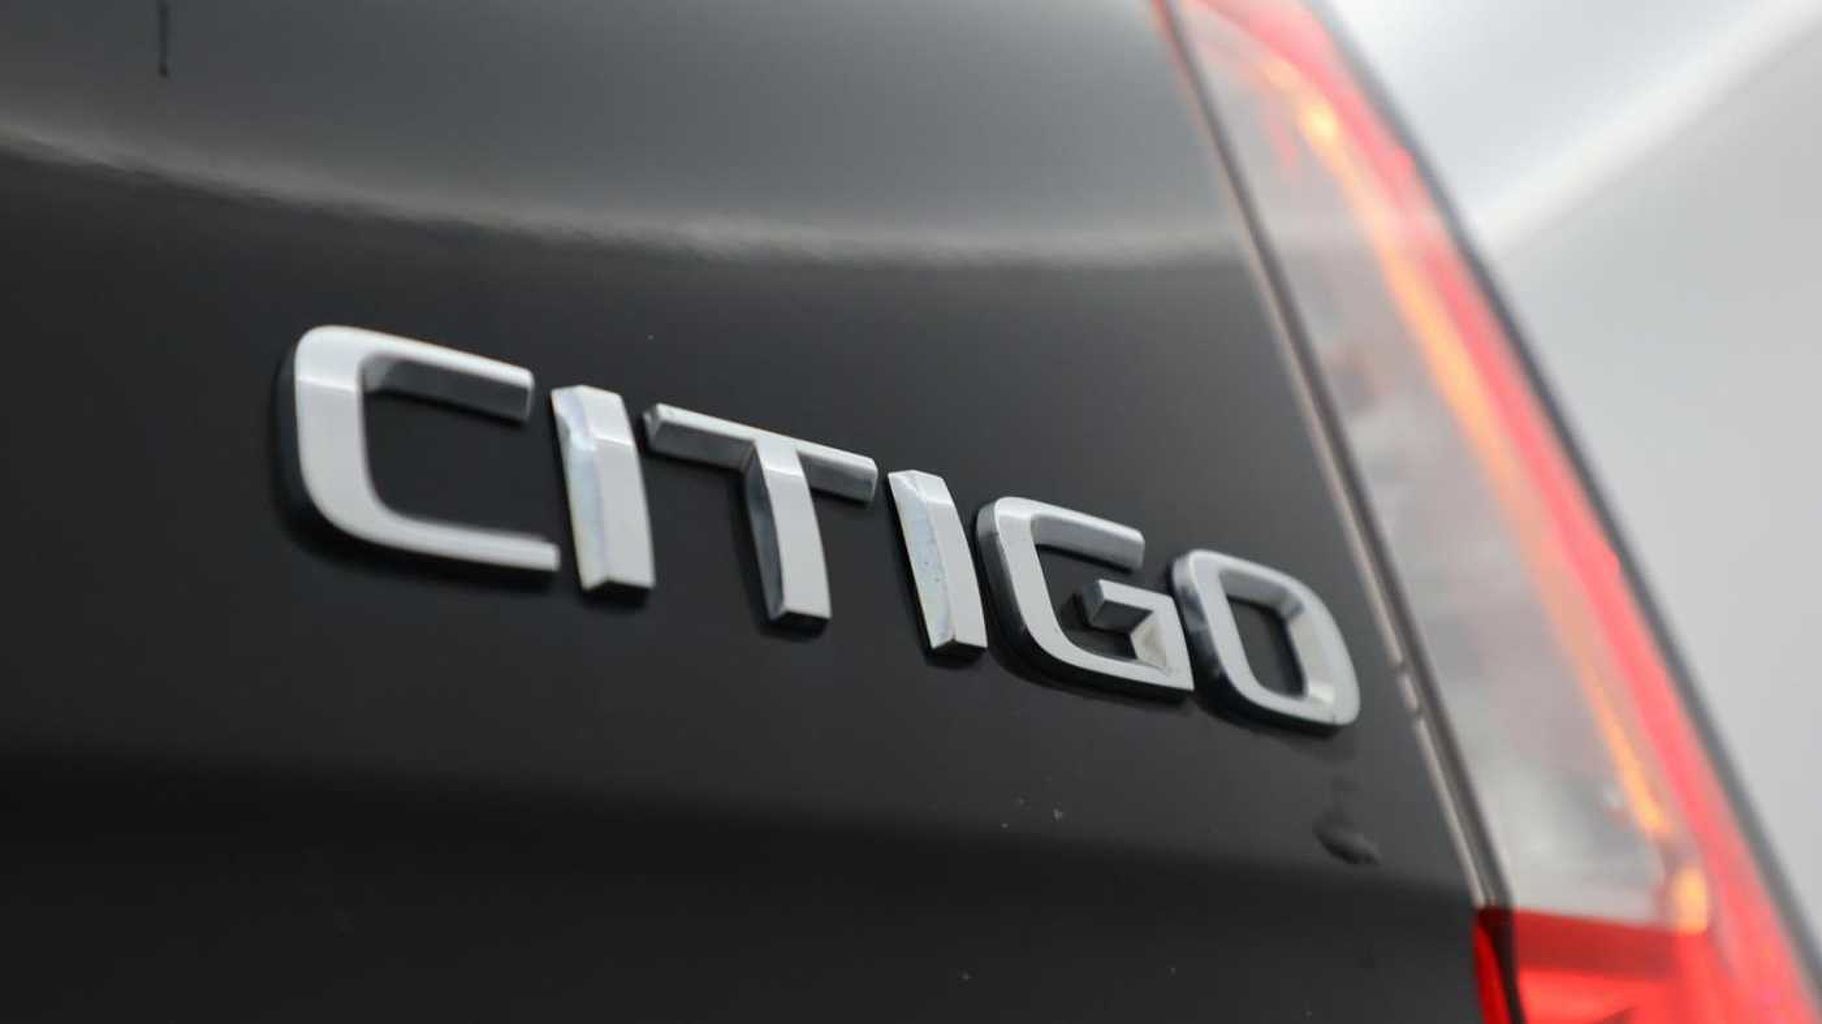 SKODA Citigo 1.0 MPI (60PS) SE Hatchback 5-Dr